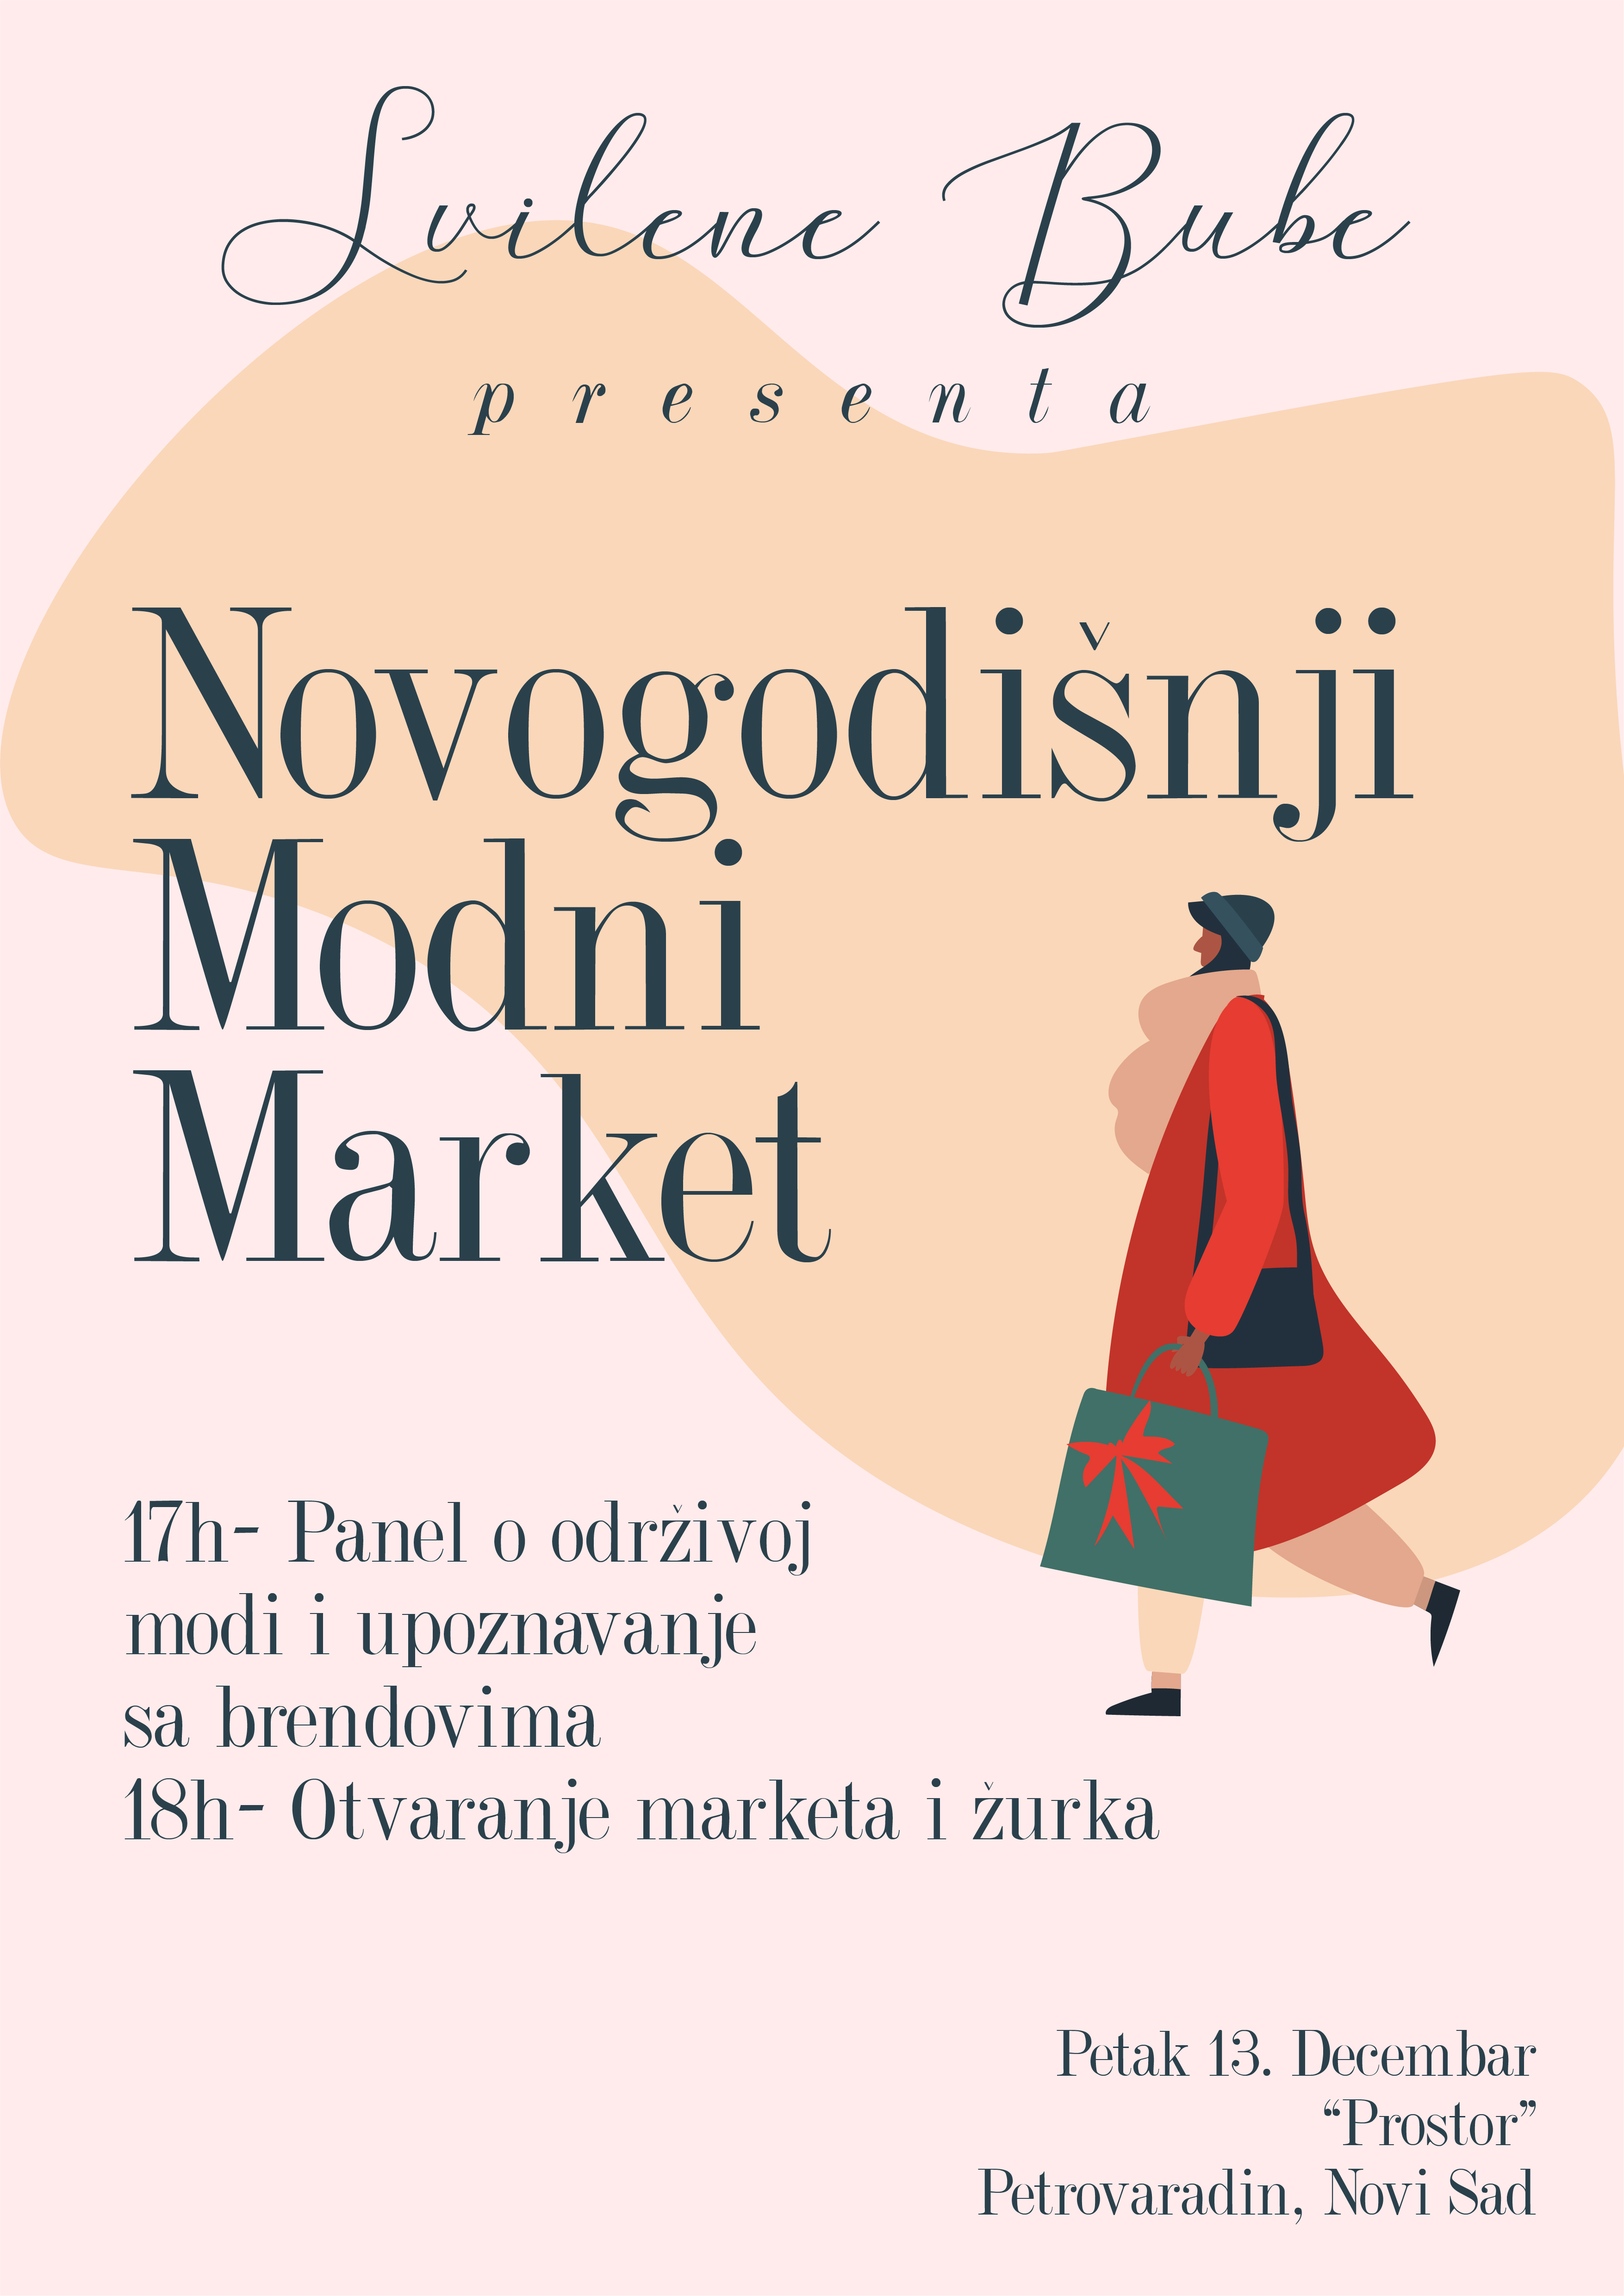 Svilene Bube - Novogodišnji market održive mode plakat